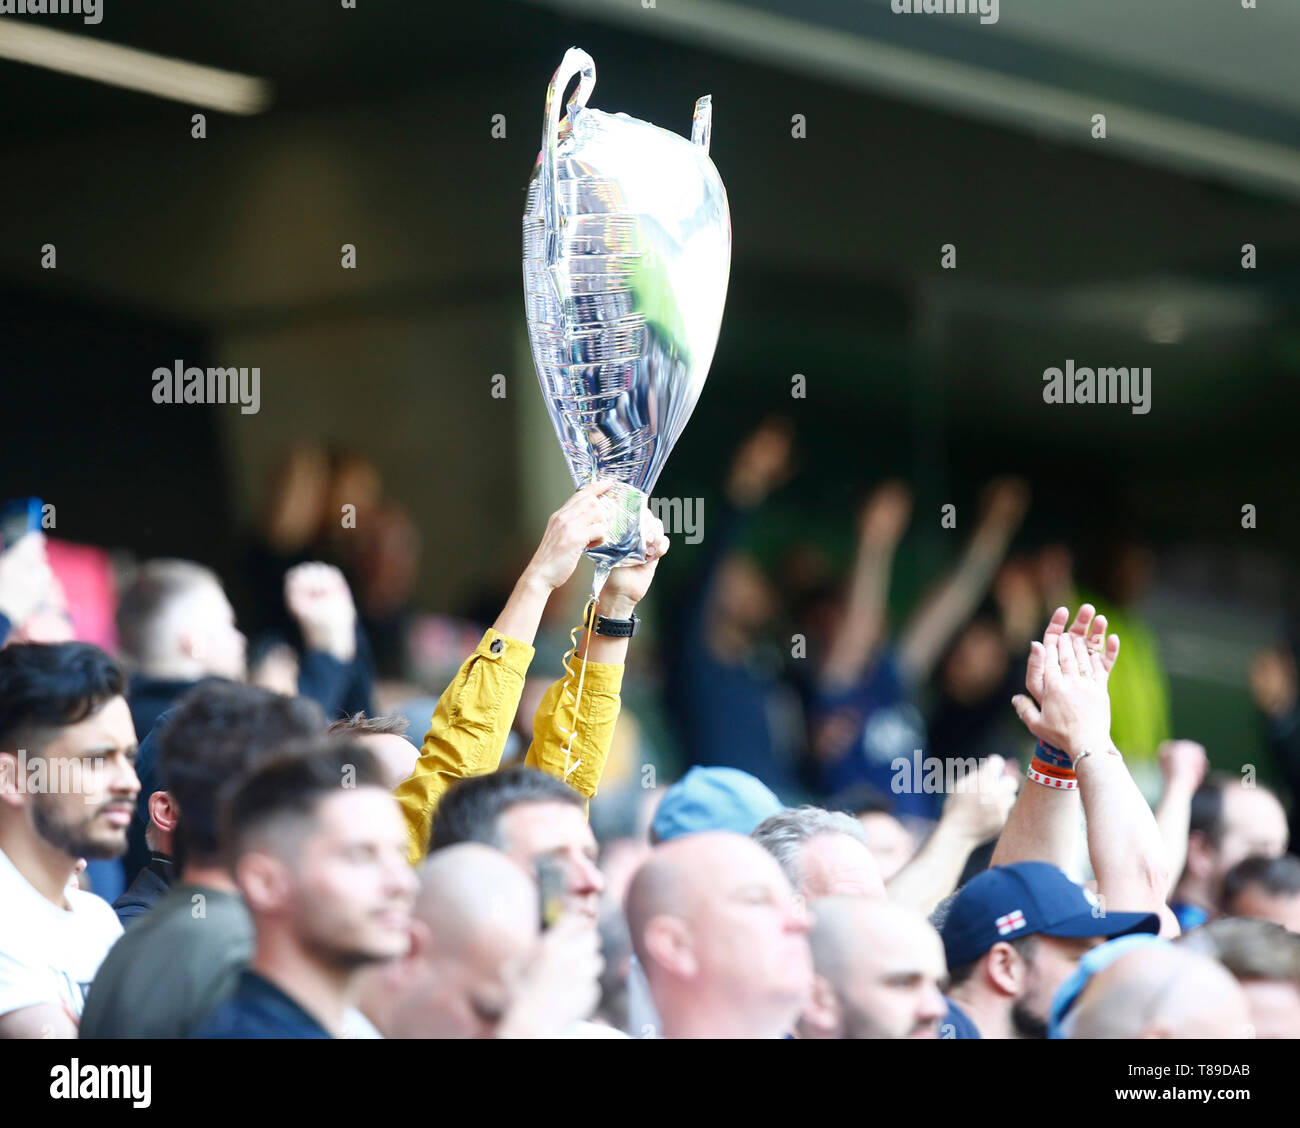 Copa de la premier league inglesa e imágenes de alta resolución - Alamy